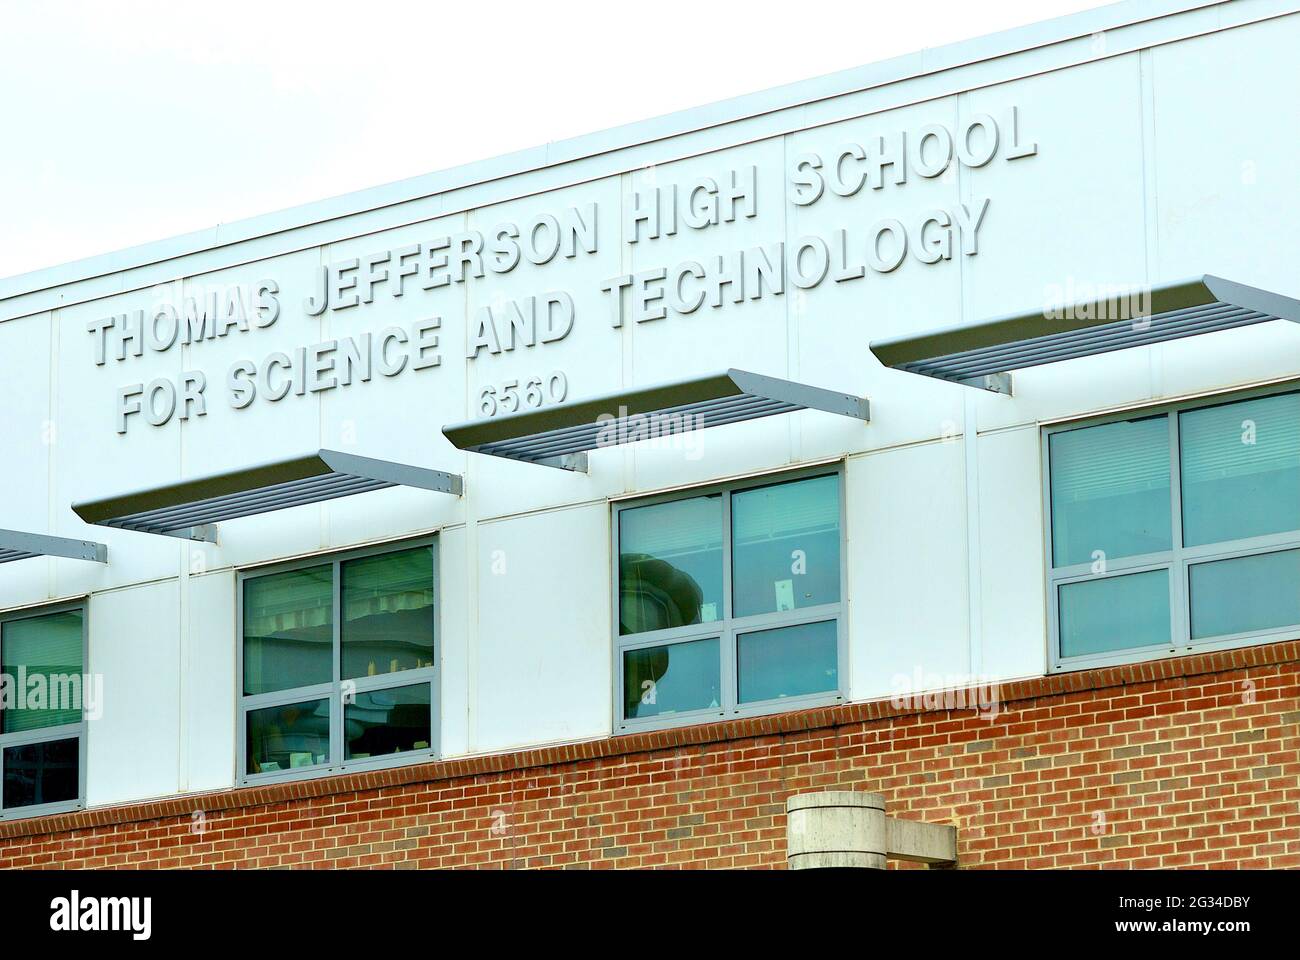 Thomas Jefferson High School for Science and Technology est le premier lycée public des États-Unis situé dans le comté de Fairfax, en Virginie. Banque D'Images